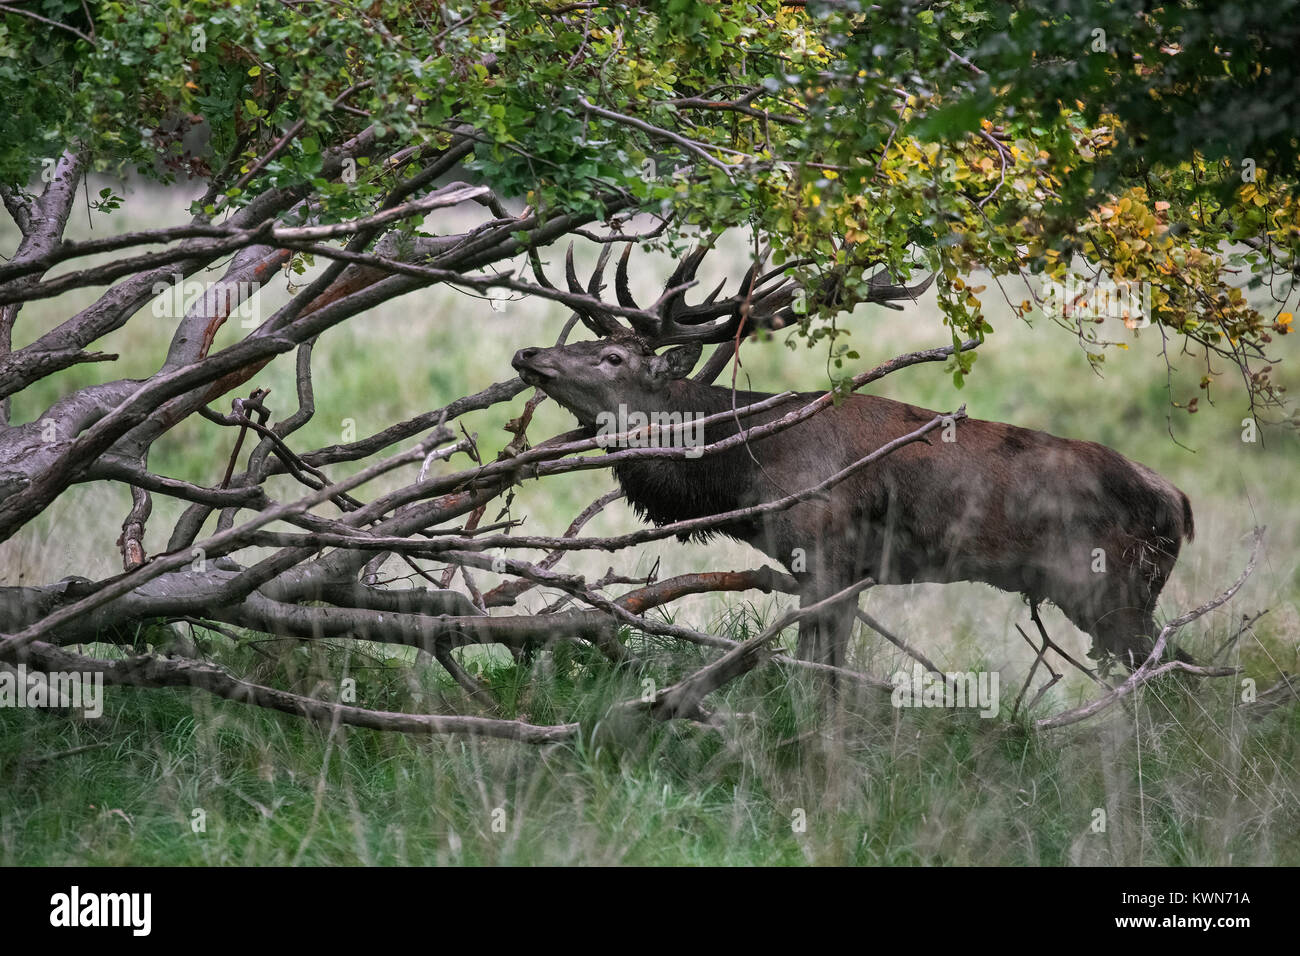 Ciervo rojo (Cervus elaphus) cabeza de ciervo agitación mostrando por frenado fuera de las ramas del árbol caído durante la rutina en otoño bosque Foto de stock